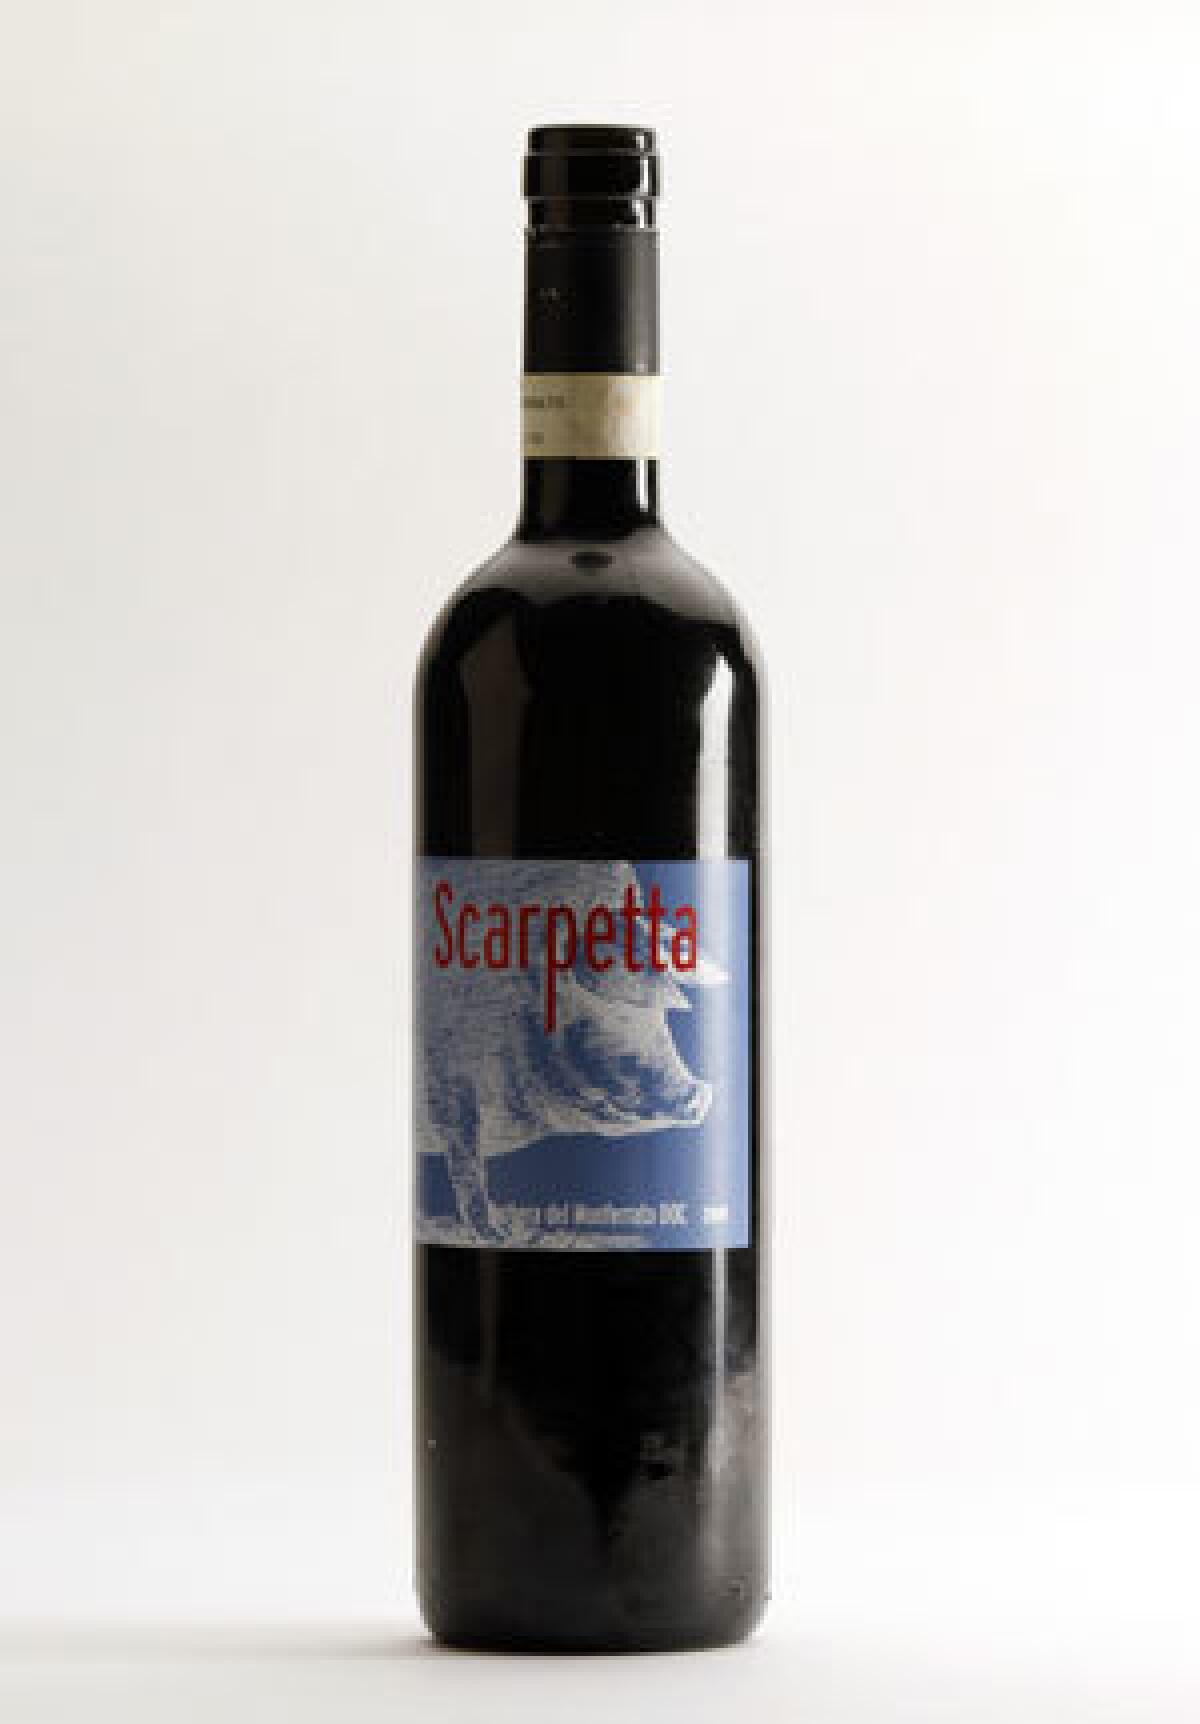 Scarpetta Red Wine 2009